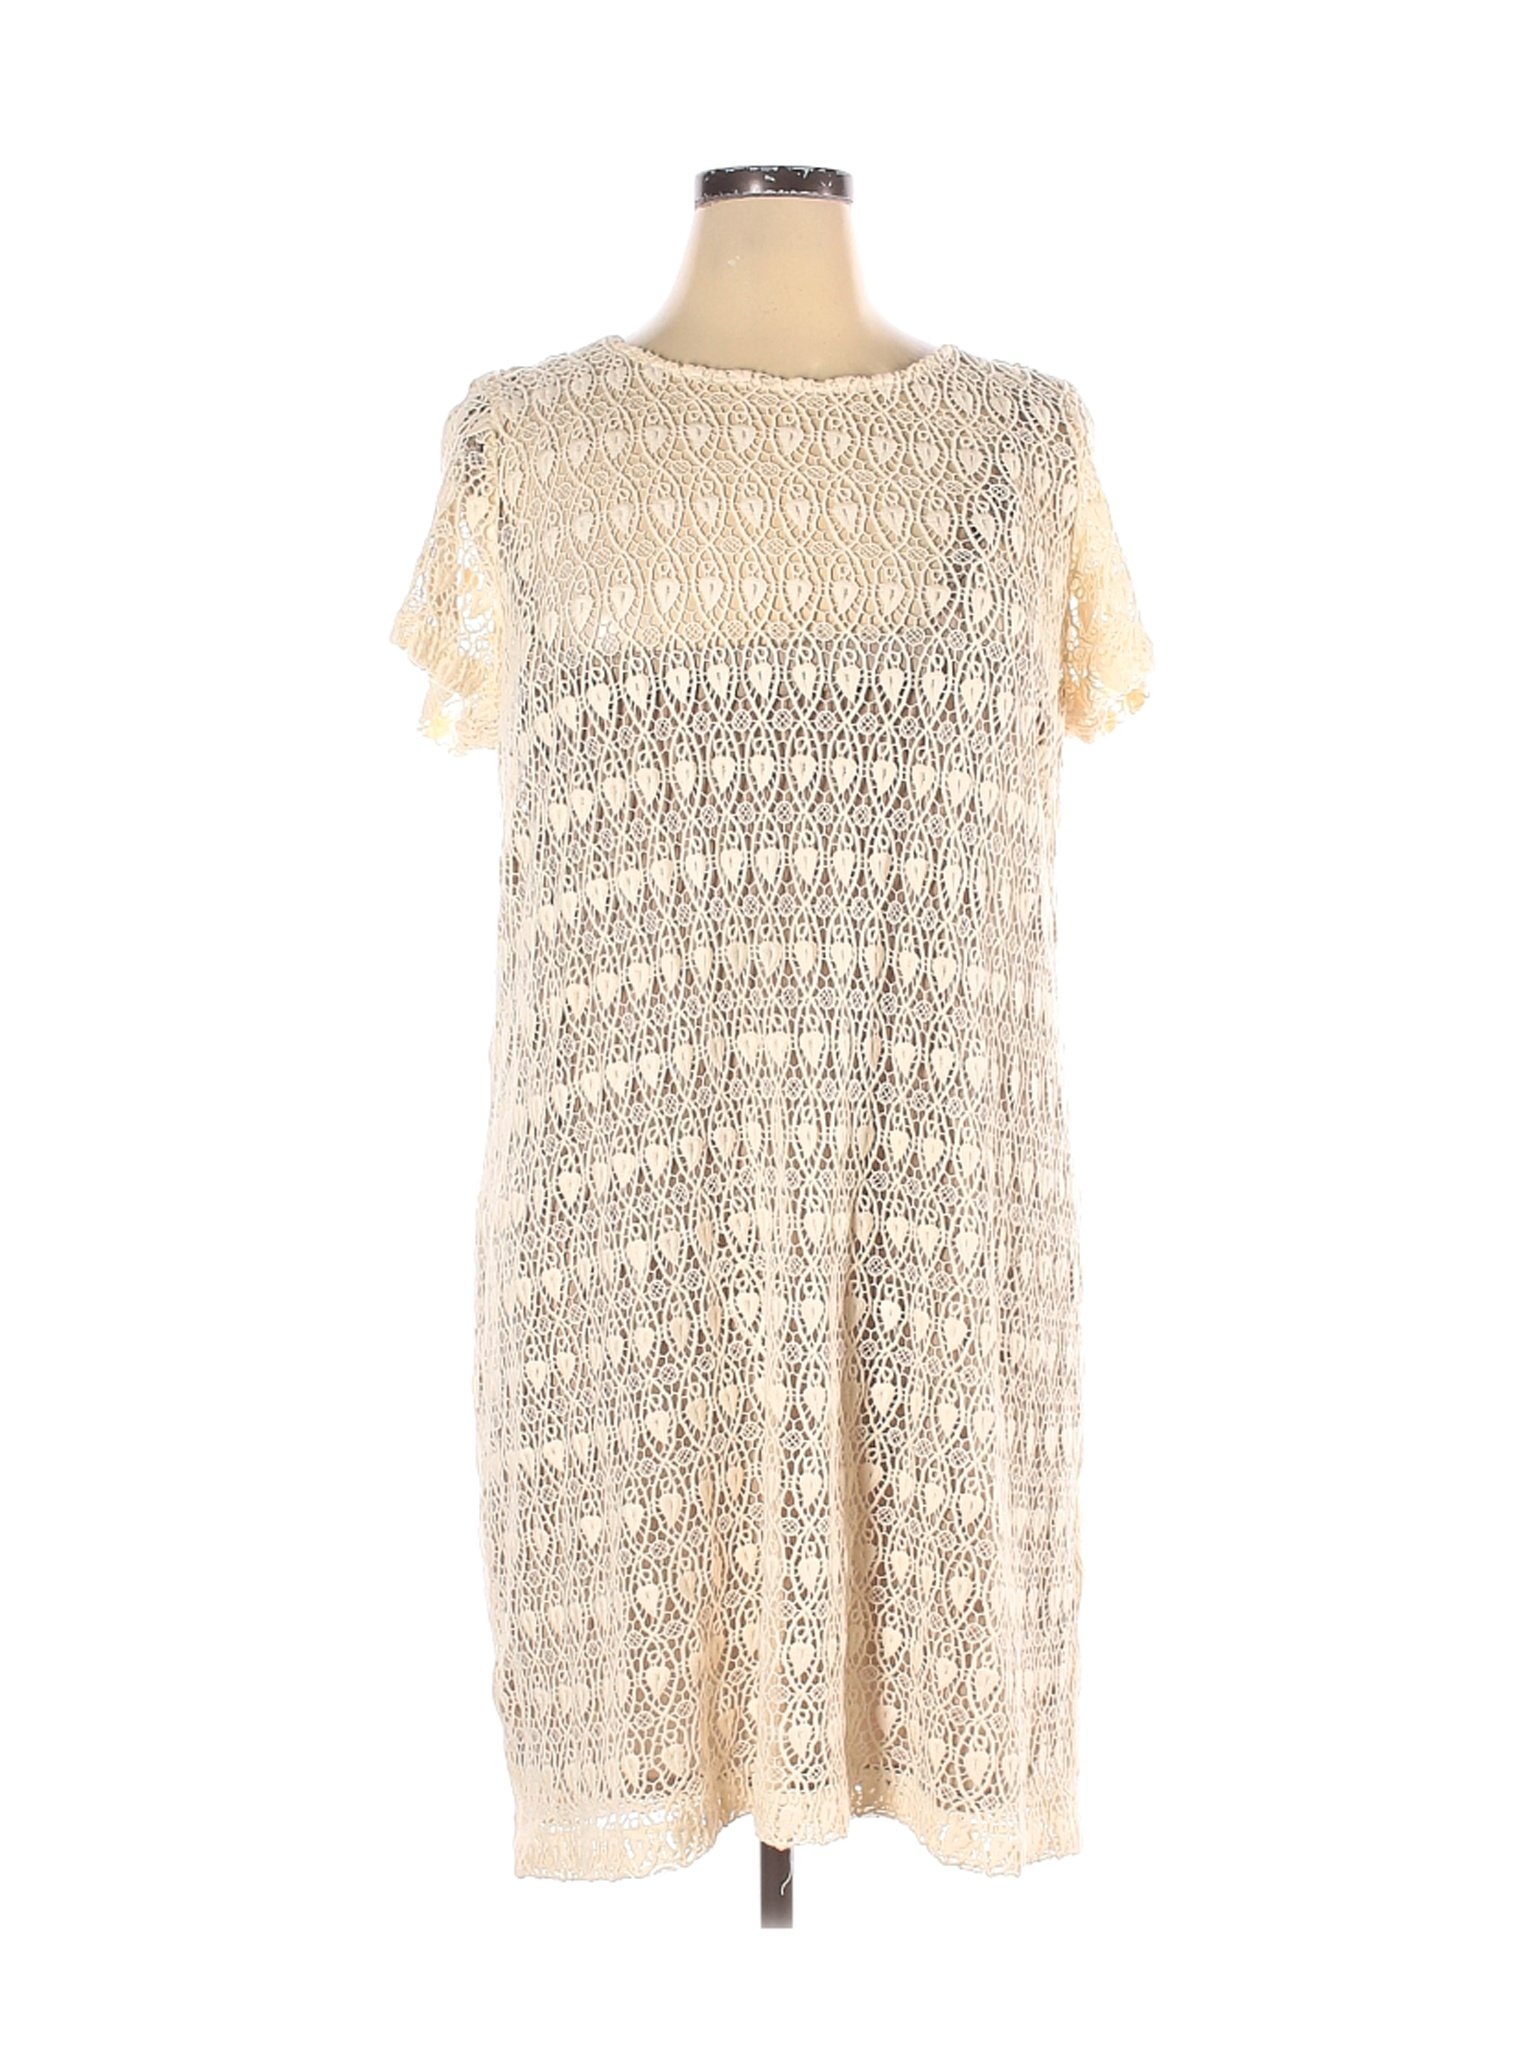 Chico's Women Ivory Cocktail Dress XXL | eBay